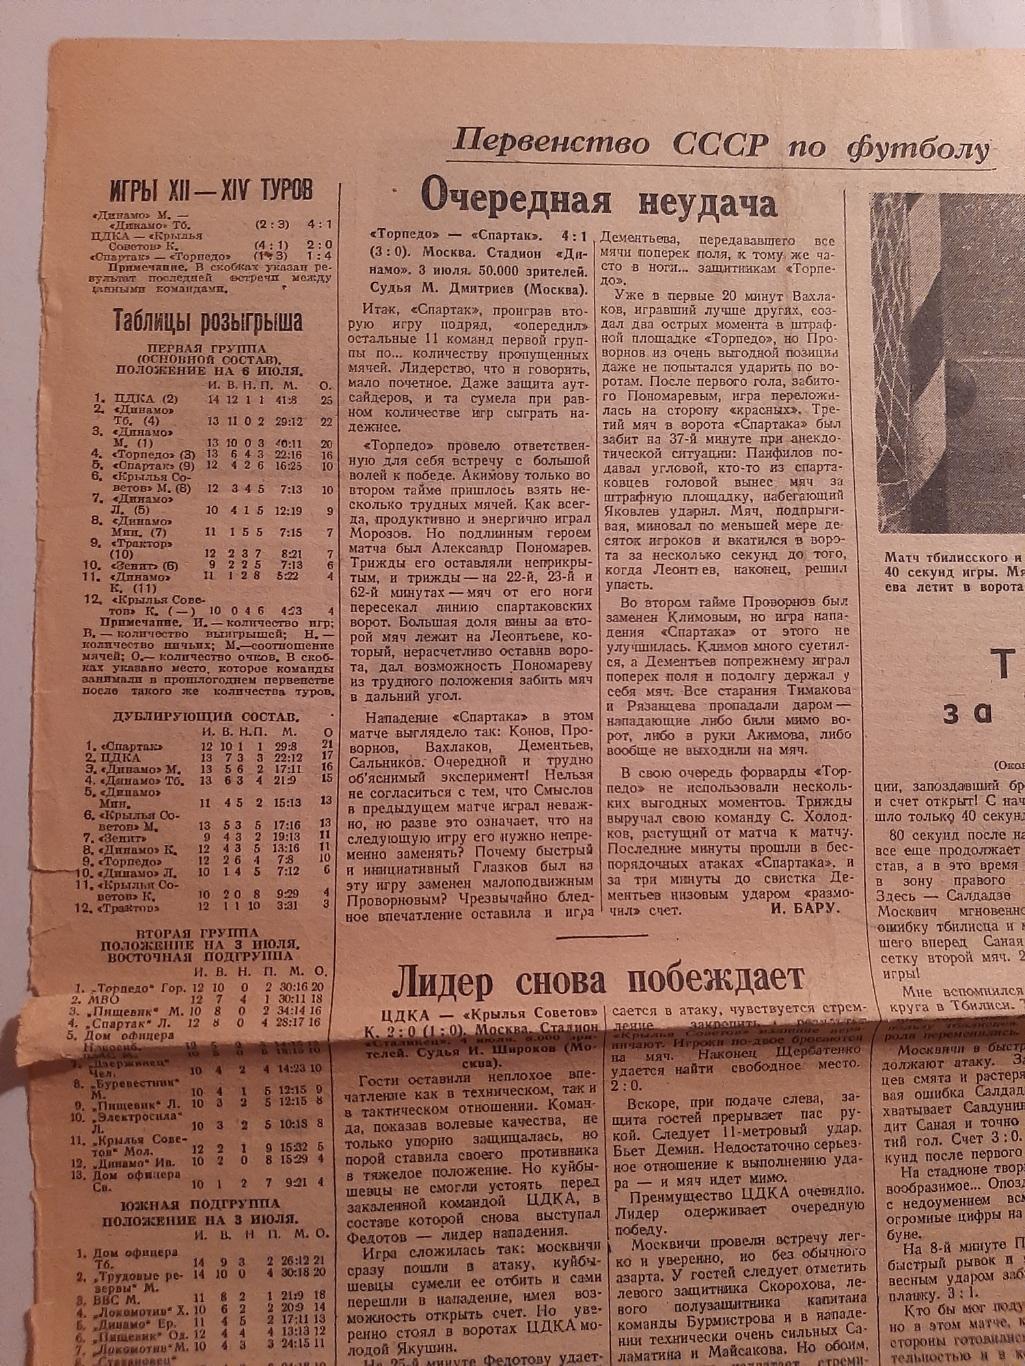 Вырезка Советский спорт 1946 Торпедо - Спартак, ЦДКА - Крылья Советов К